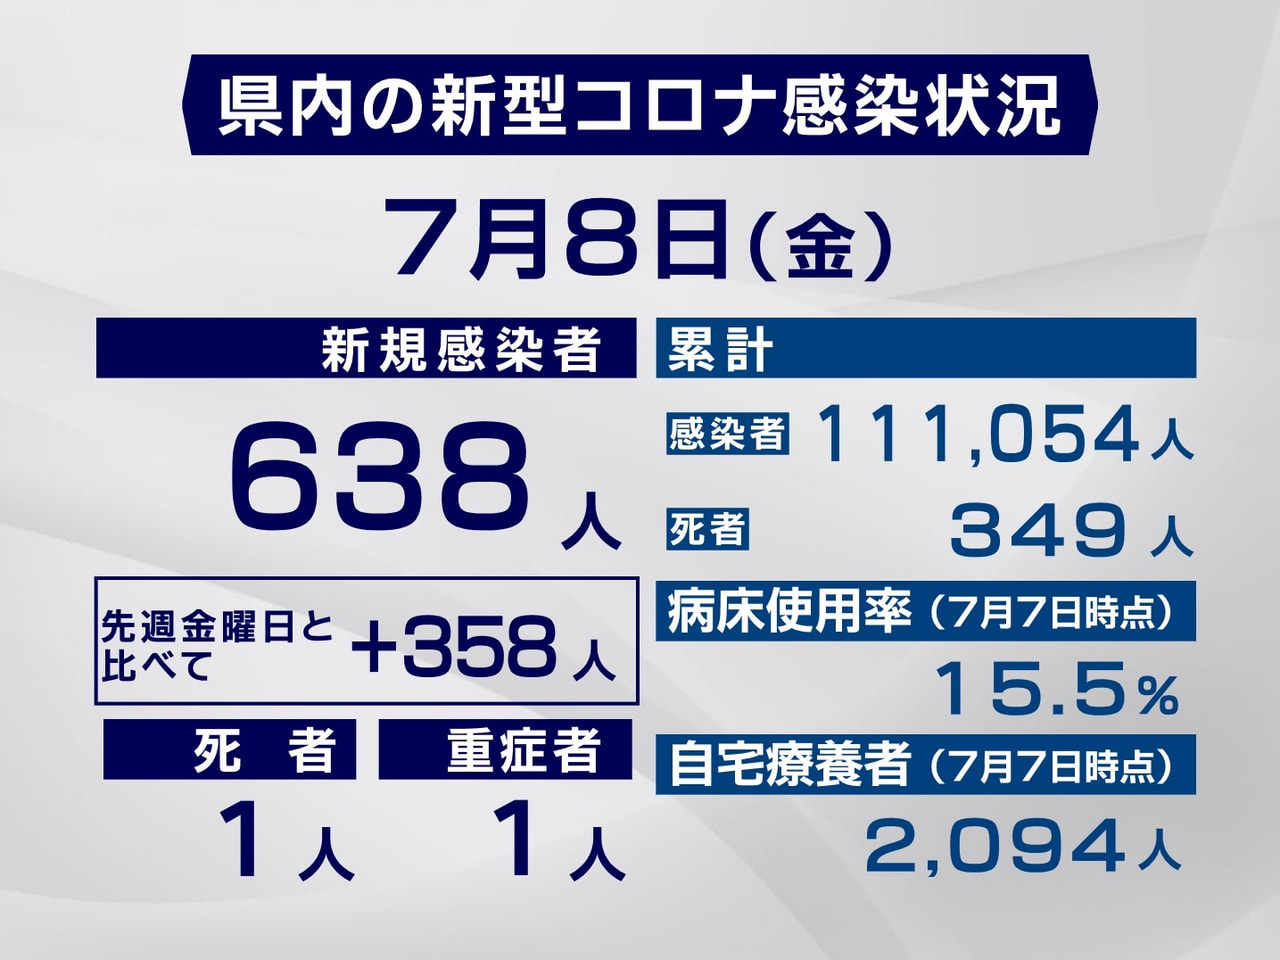 岐阜県は８日、新型コロナウイルスの感染者が新たに６３８人、また１人の死亡が確認さ...